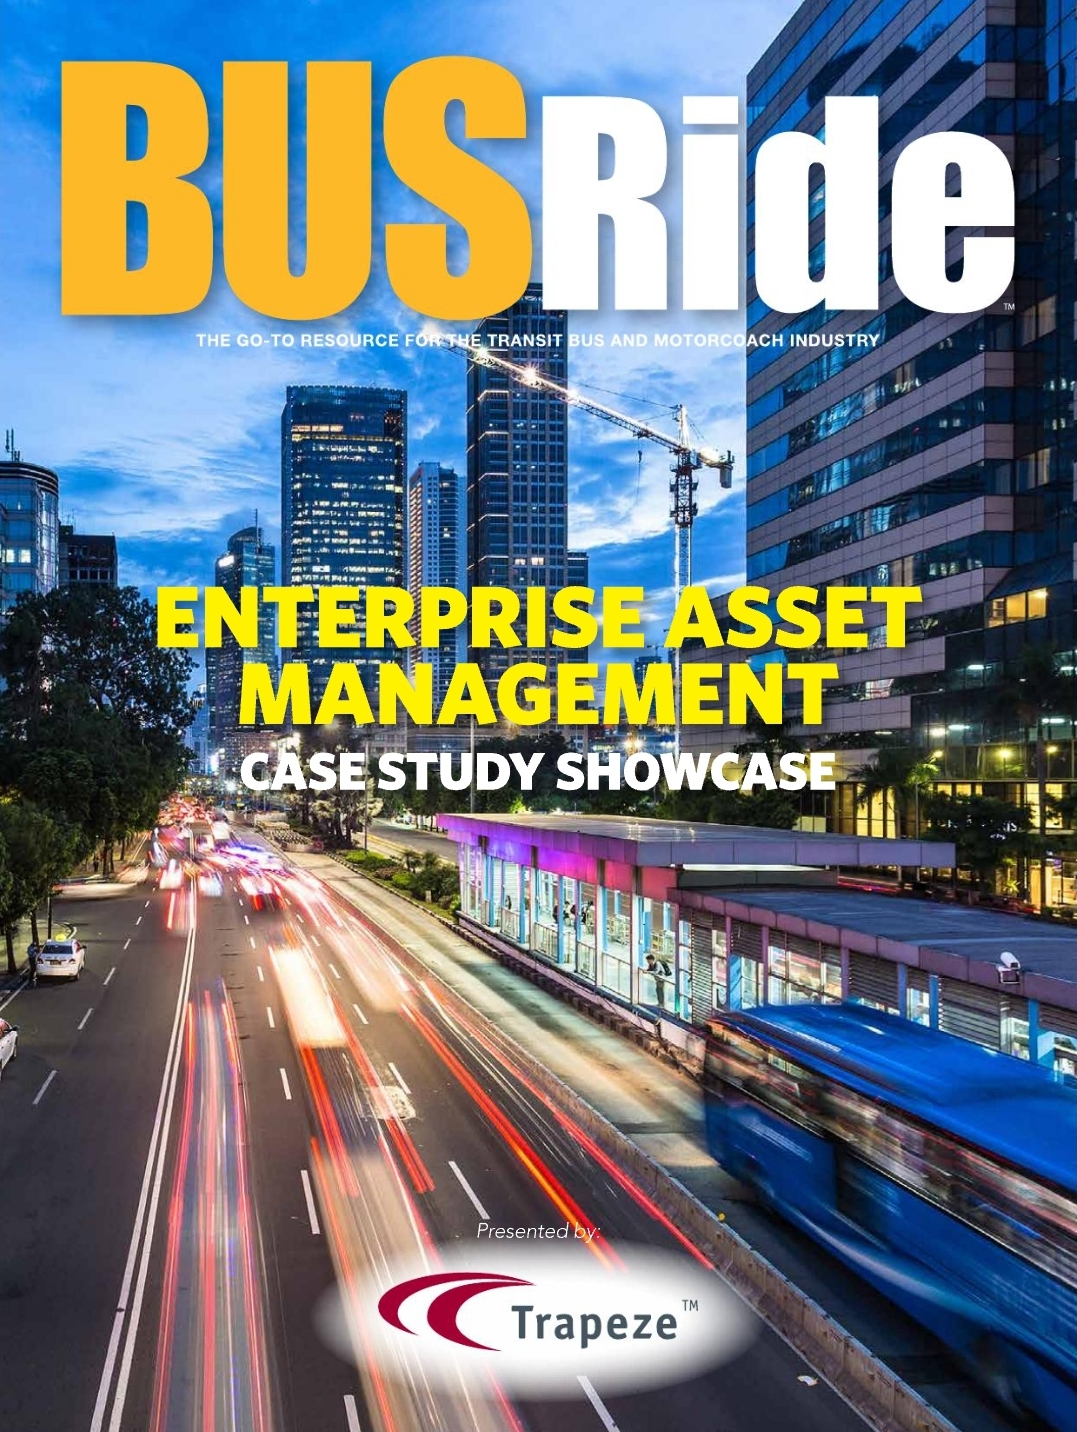 Enterprise Asset Management Case Study Showcase